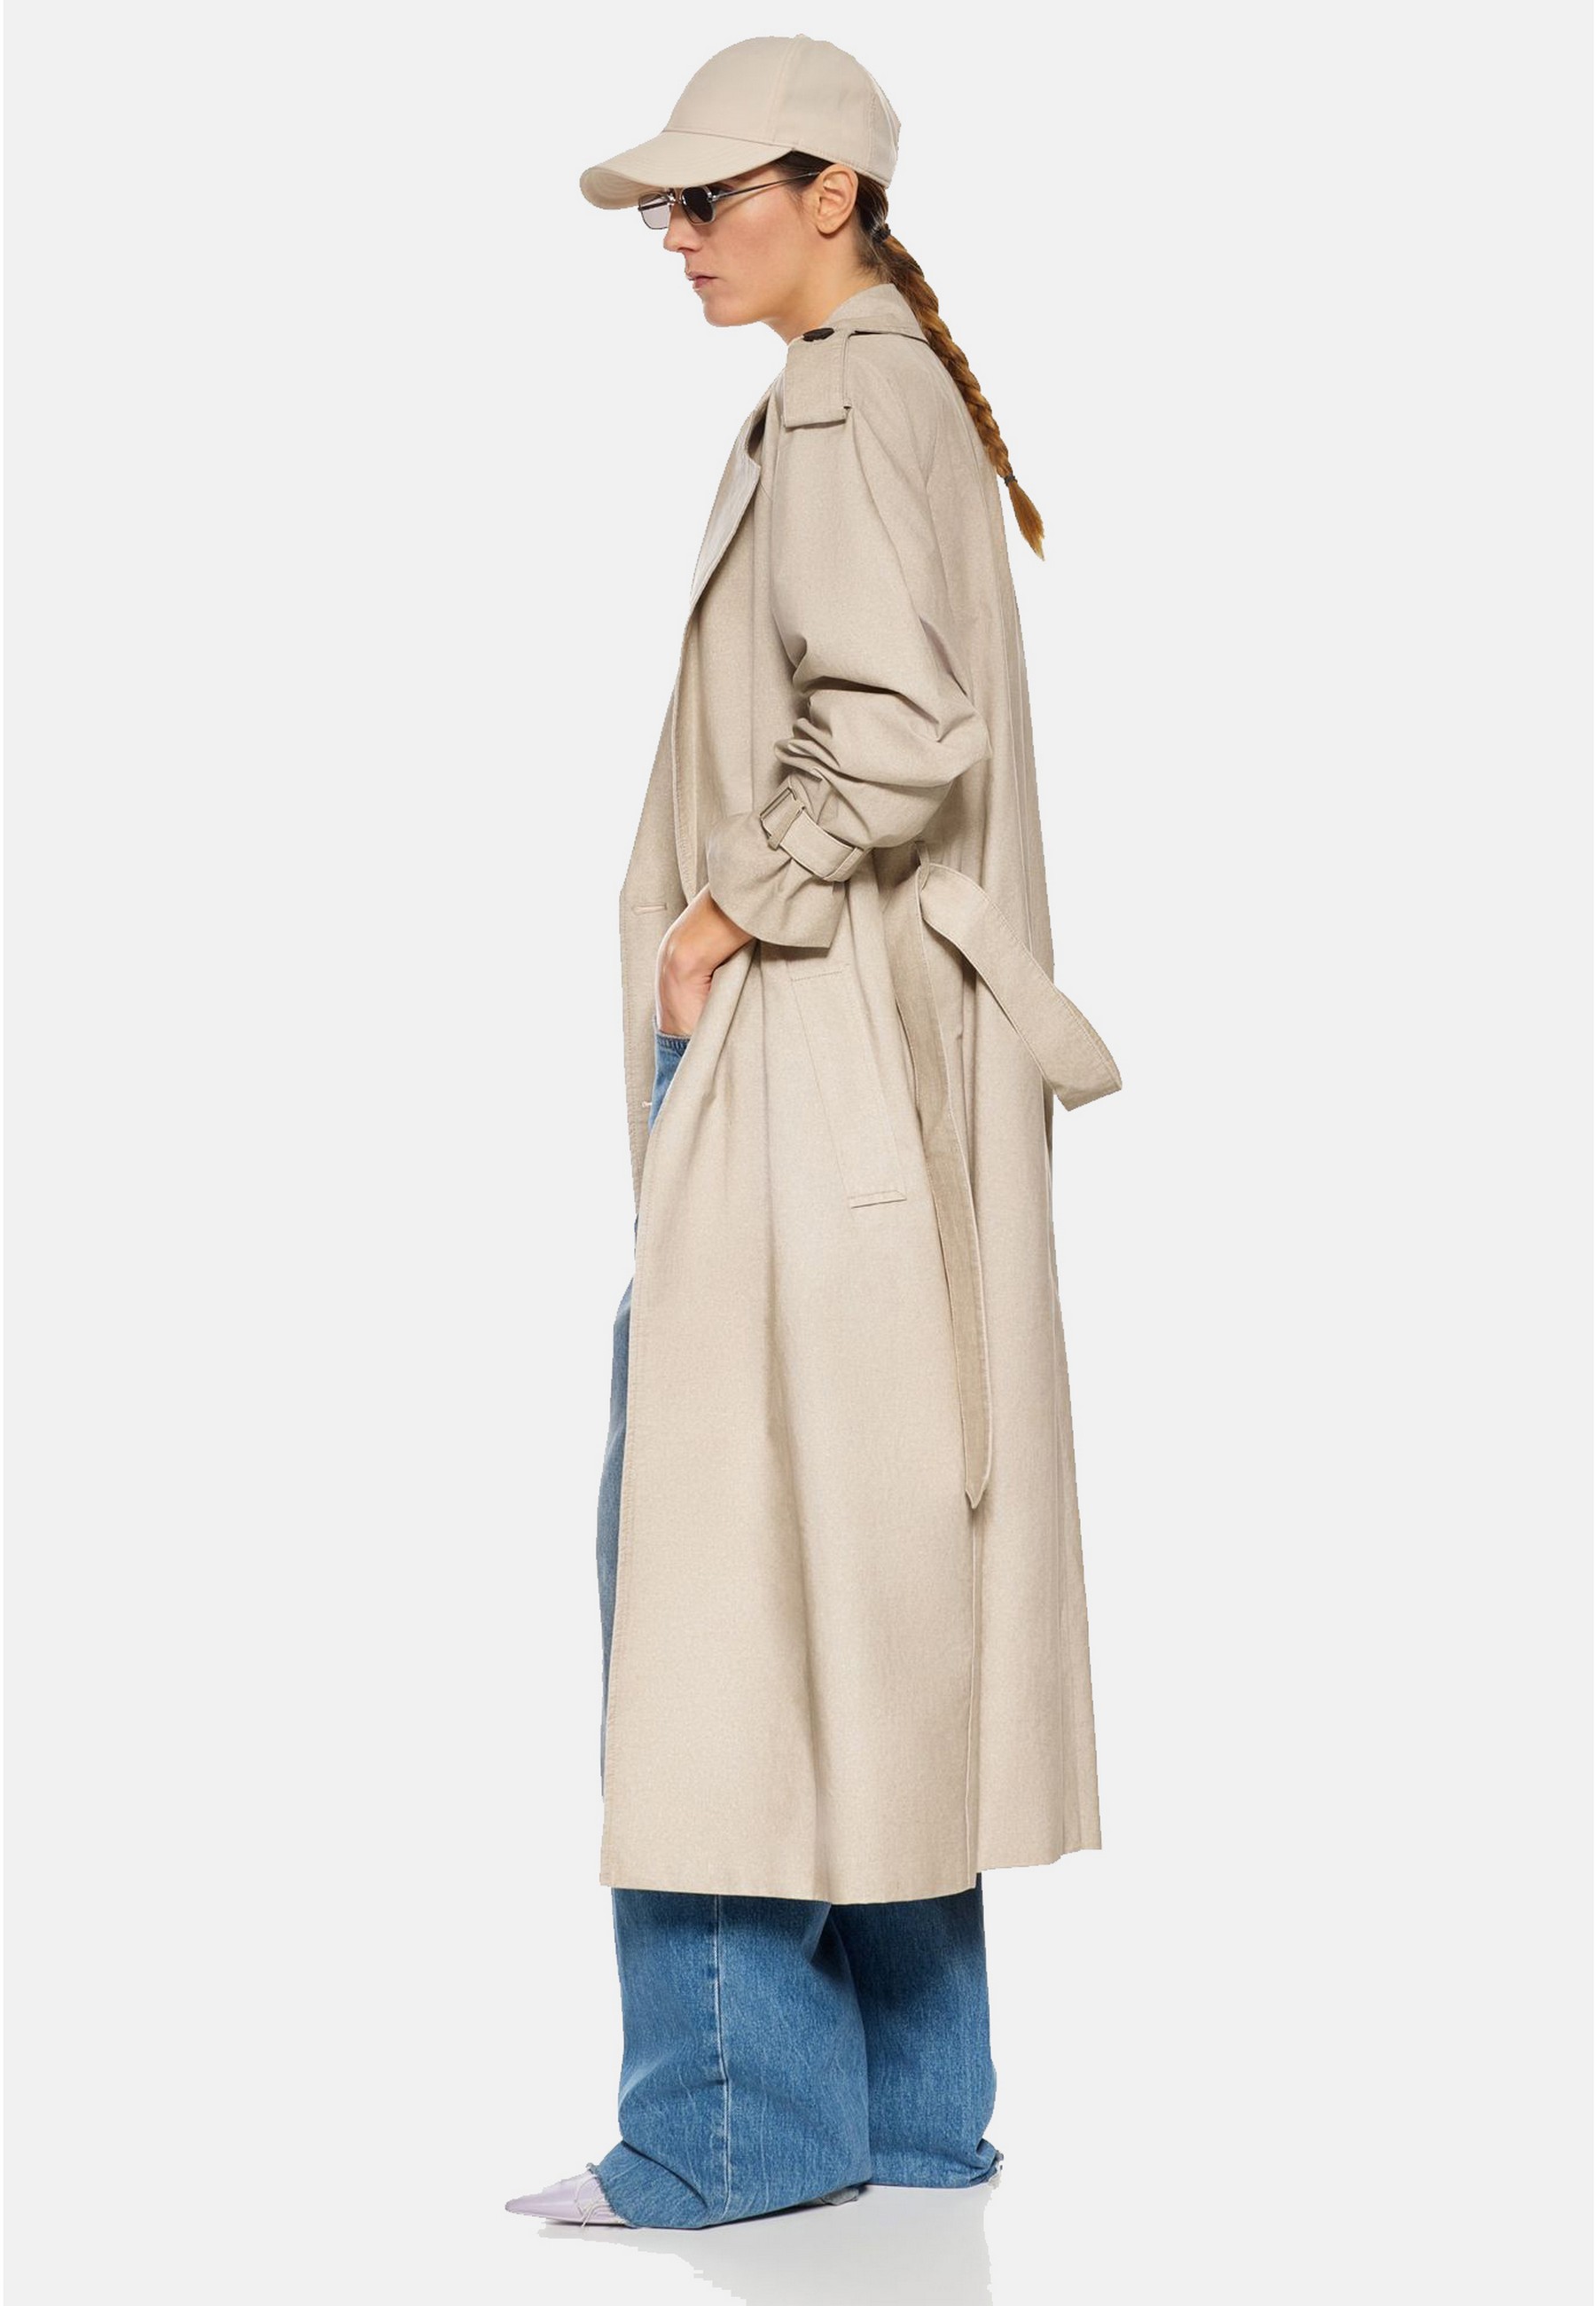 Damen Textil Mantel Clarissa in Beige von Ricano - Seitenansicht am Model